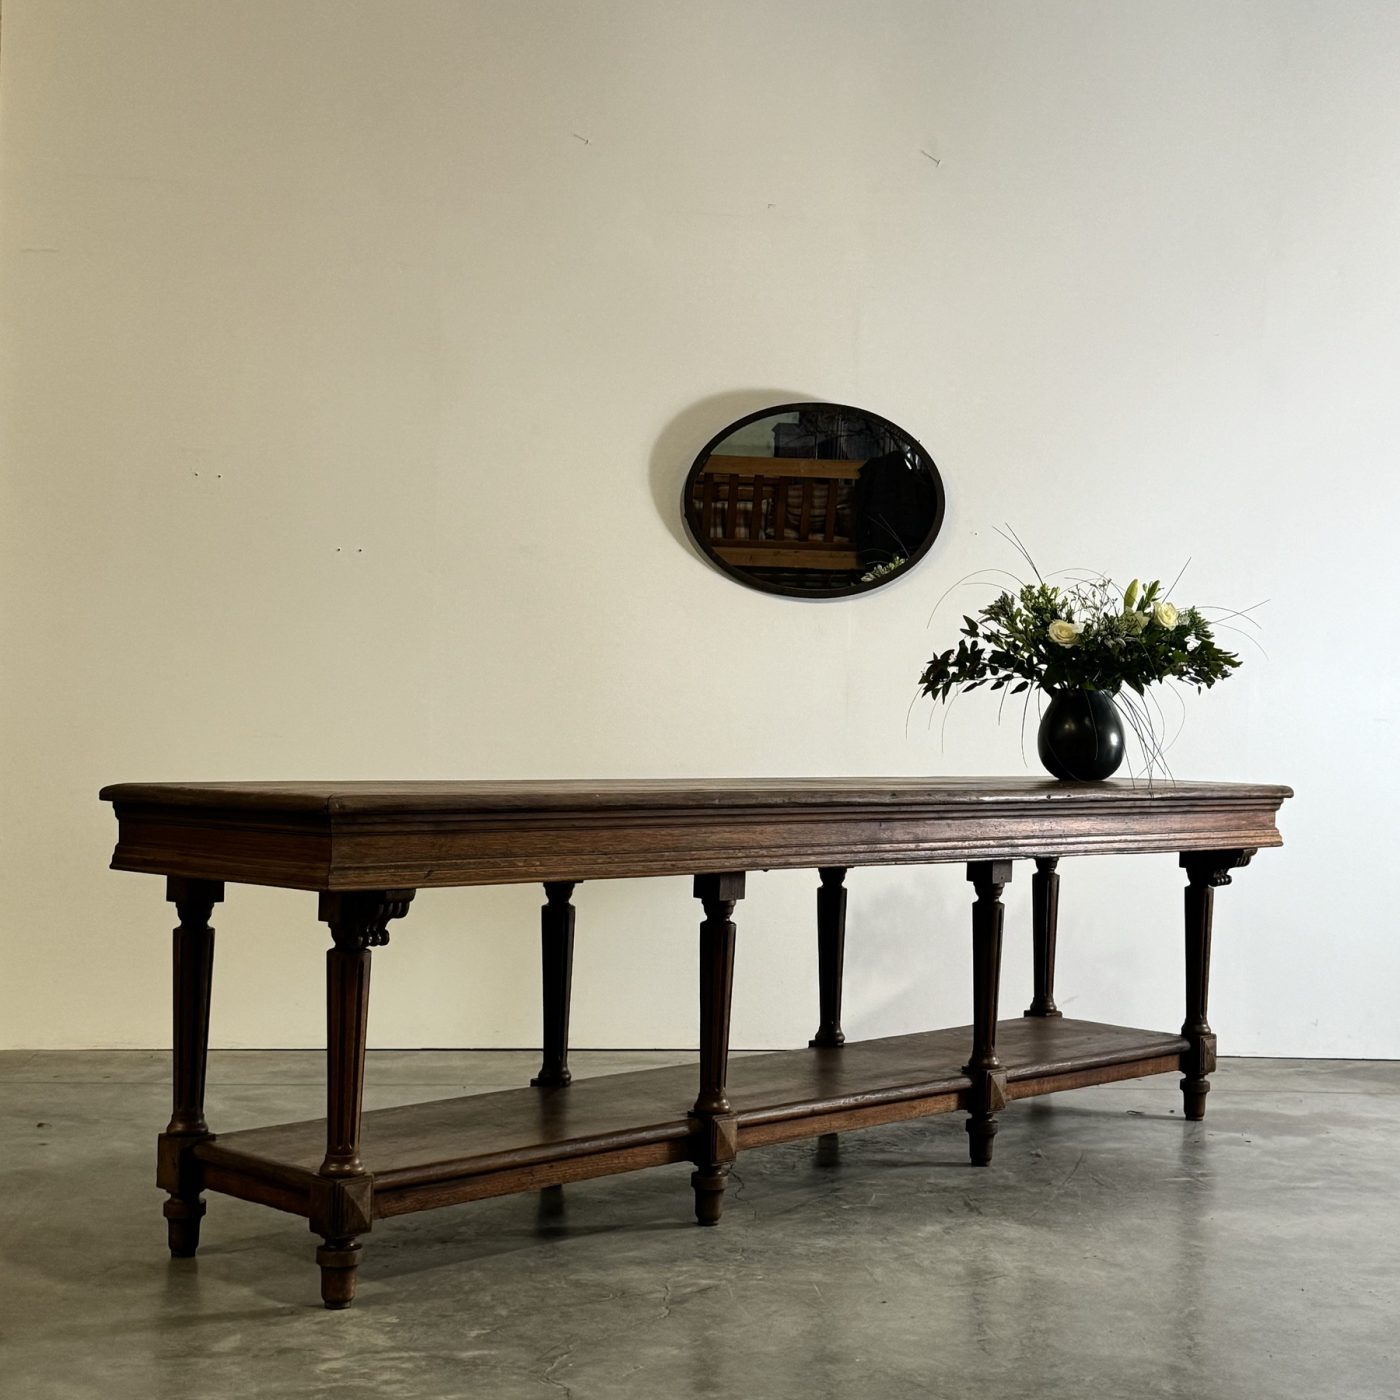 objet-vagabond-draper-table0004